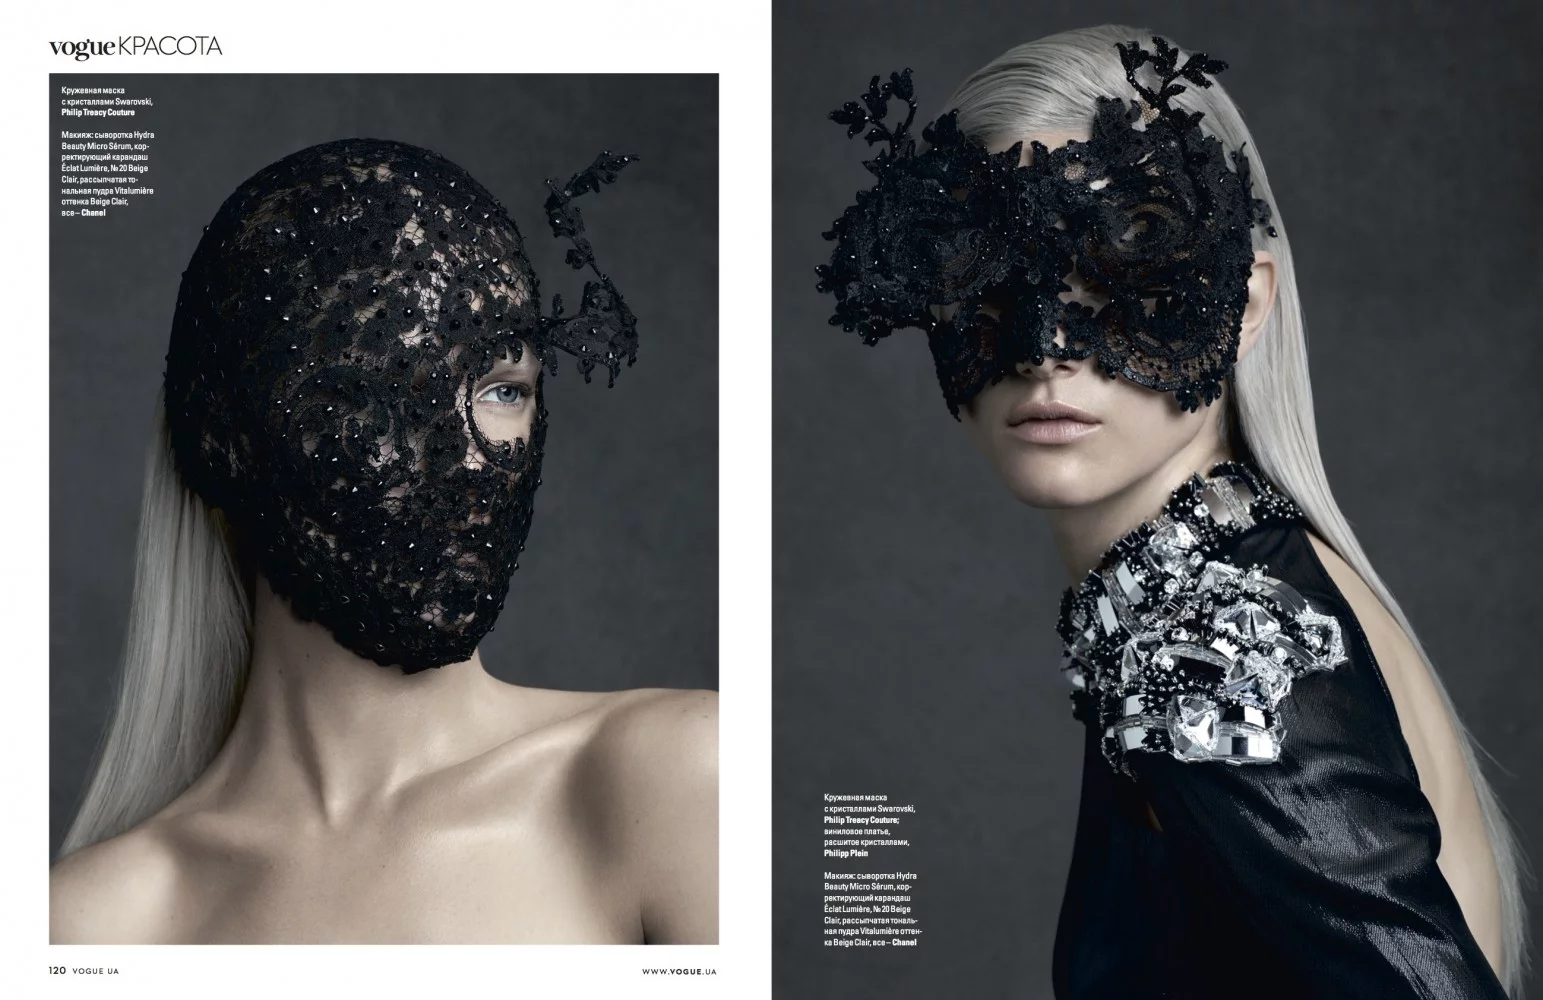 Vogue Ukraine 2 by Ralph MECKE